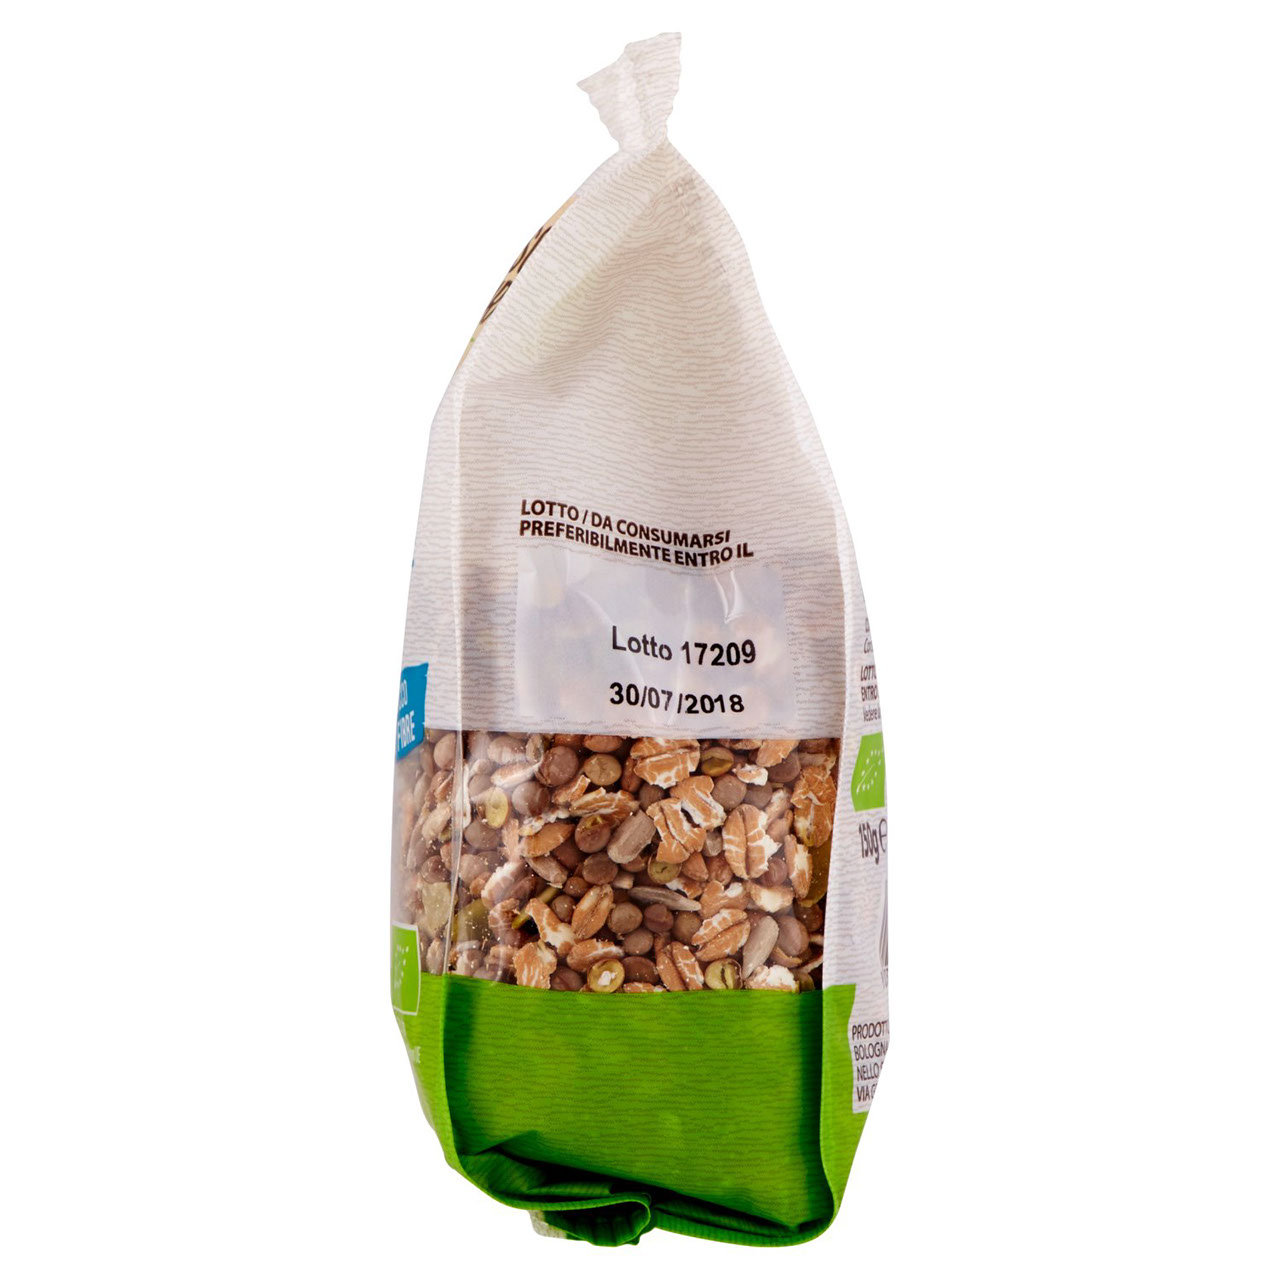 Mix Cereali Bio Colazione 150g Conad online